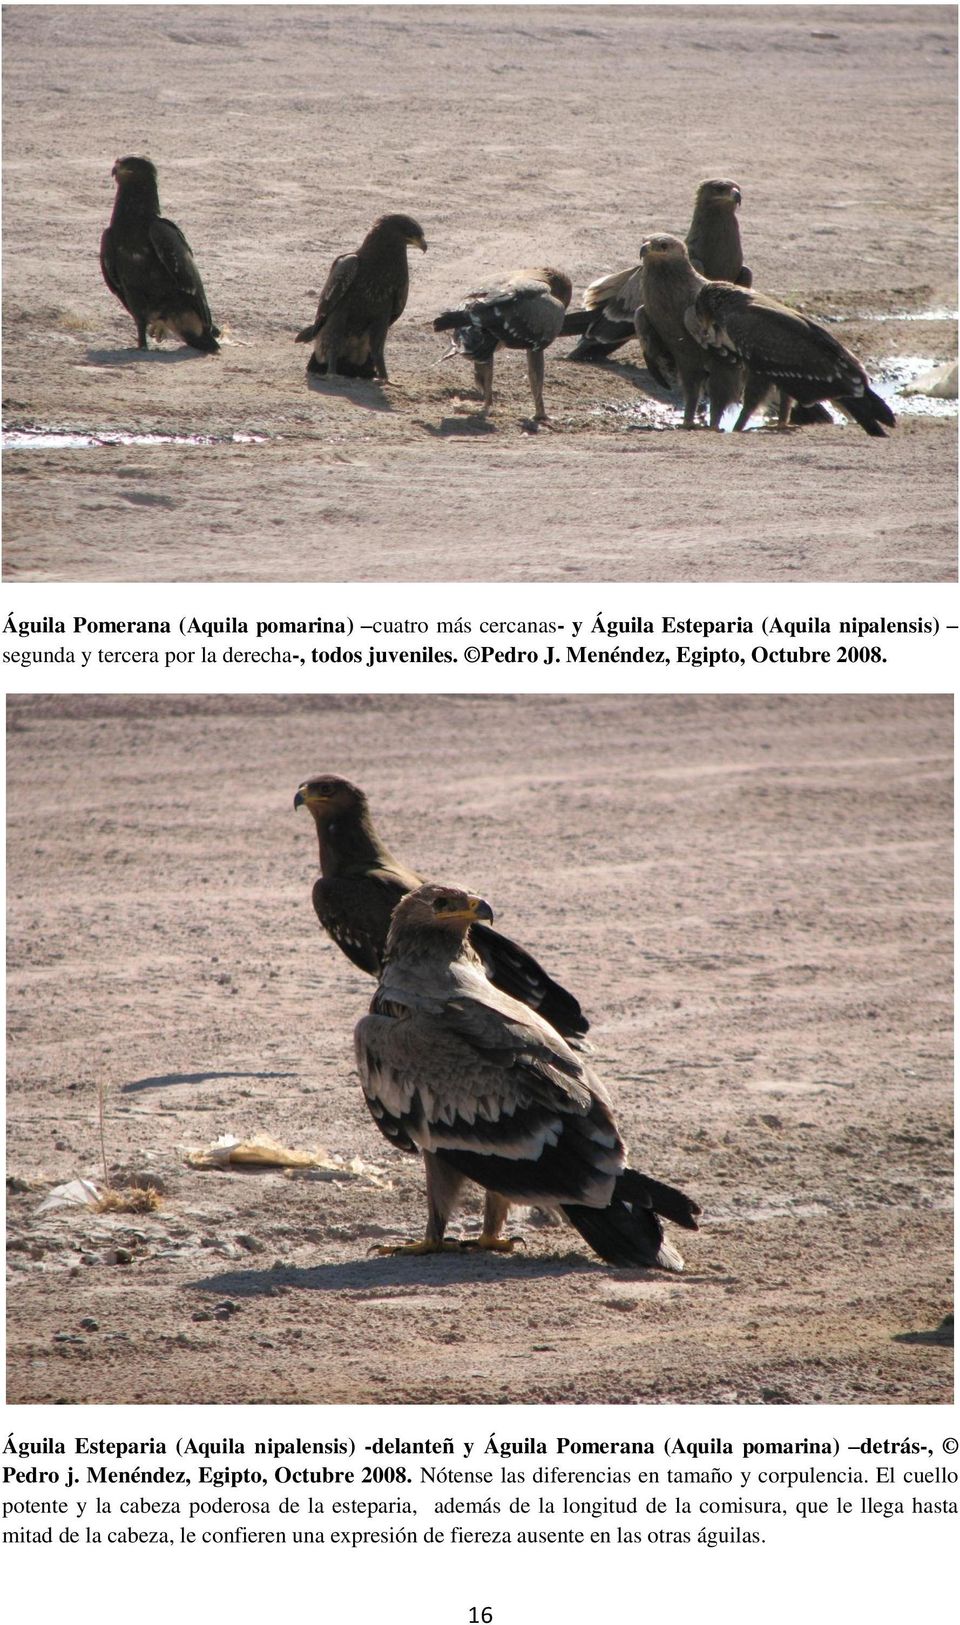 Águila Esteparia (Aquila nipalensis) -delanteñ y Águila Pomerana (Aquila pomarina) detrás-, Pedro j. Menéndez, Egipto, Octubre 2008.